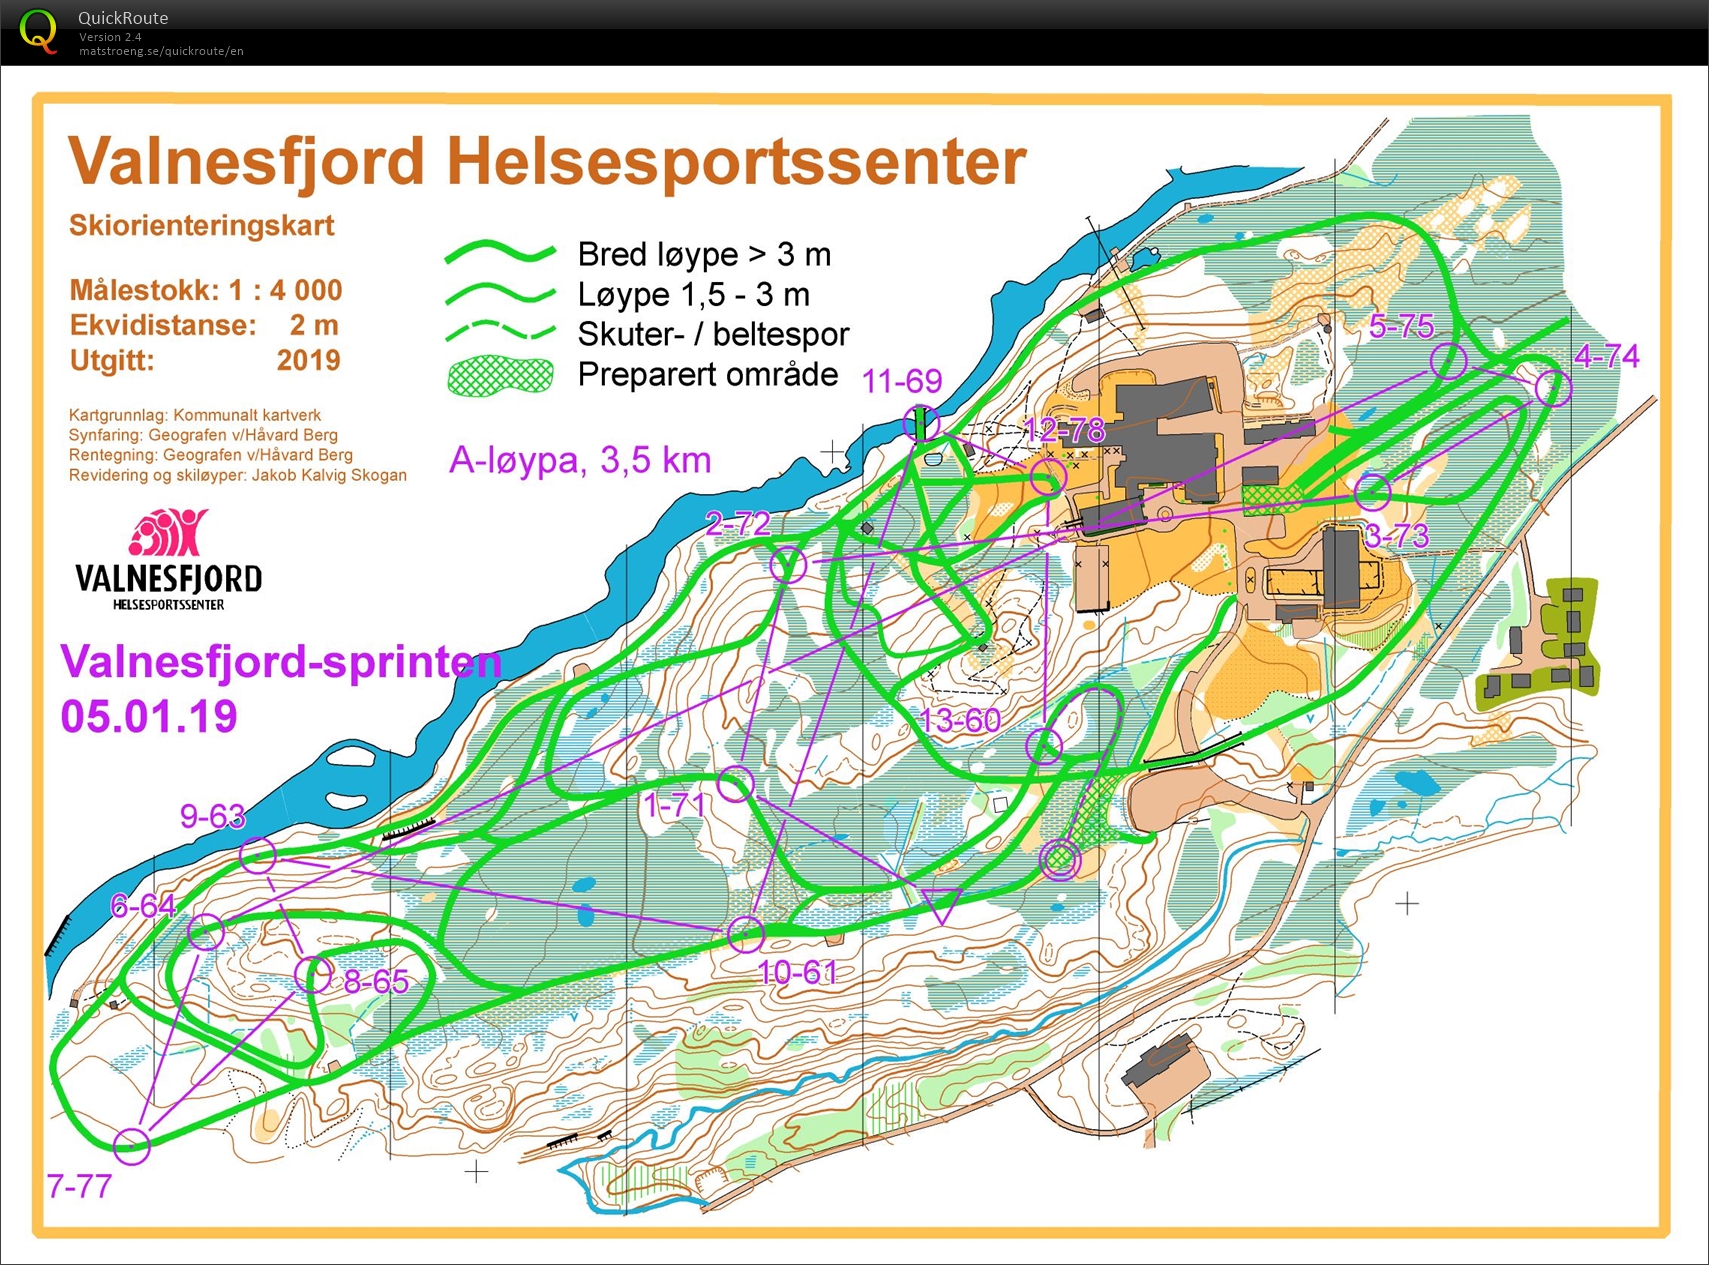 Valnesfjordsprinten Skiorientering (05-01-2020)